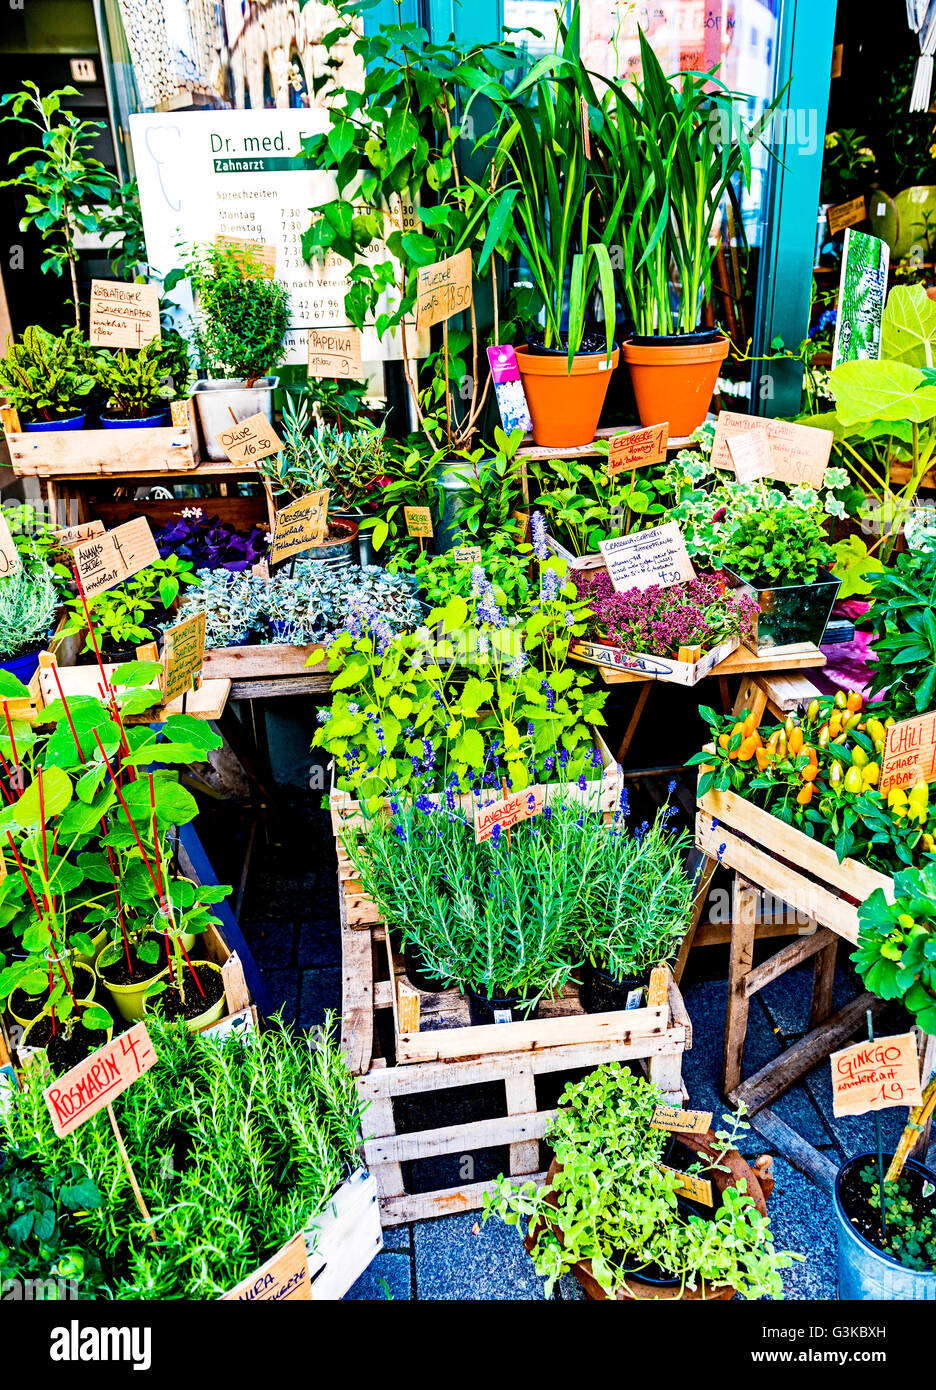 Plants at a market stall; pflanzen an einem Marktstand Stock Photo